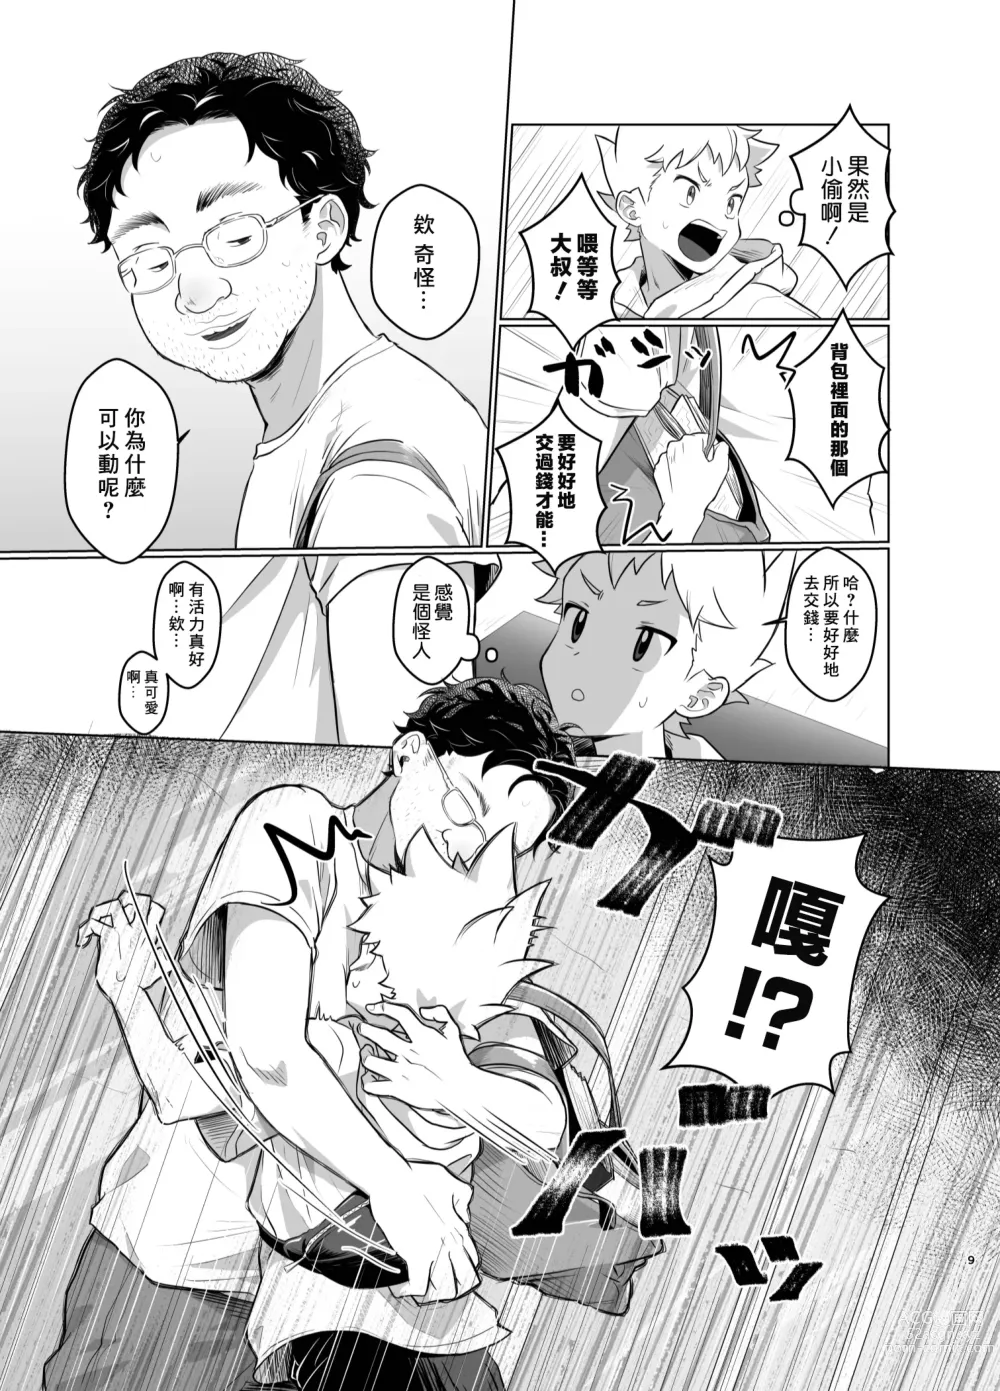 Page 8 of doujinshi Mahou Shoujo Mirakuru Mirachan丨魔法少女奇蹟米拉醬 (decensored)